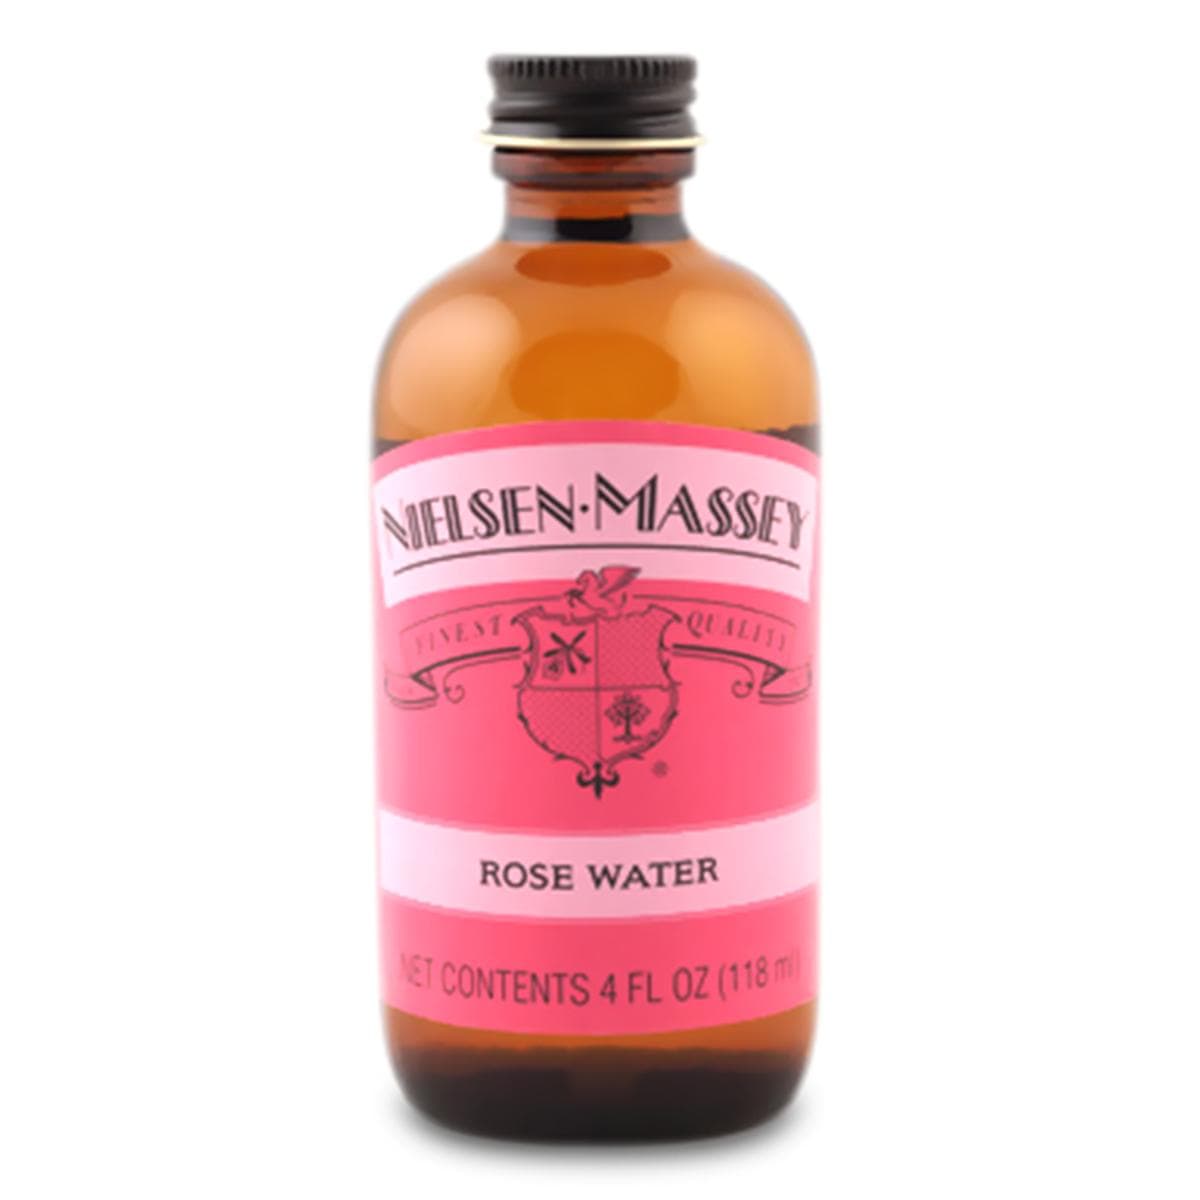 Nielsen-Massey Extract Nielsen-Massey Rose Water Extract - 2oz